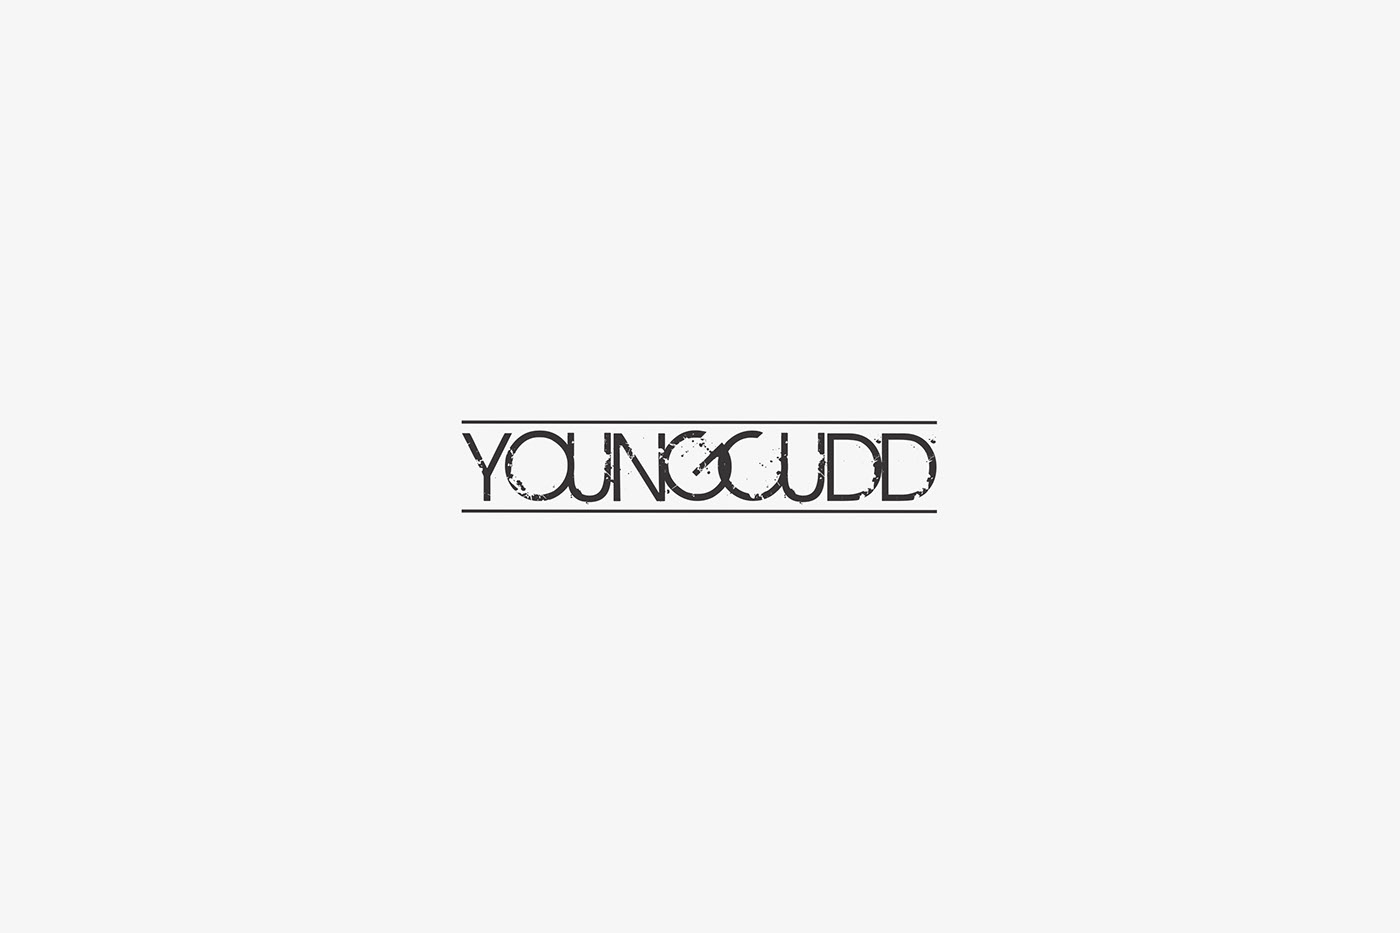 logo branding  music artist Young cudd soundcloud hip-hop